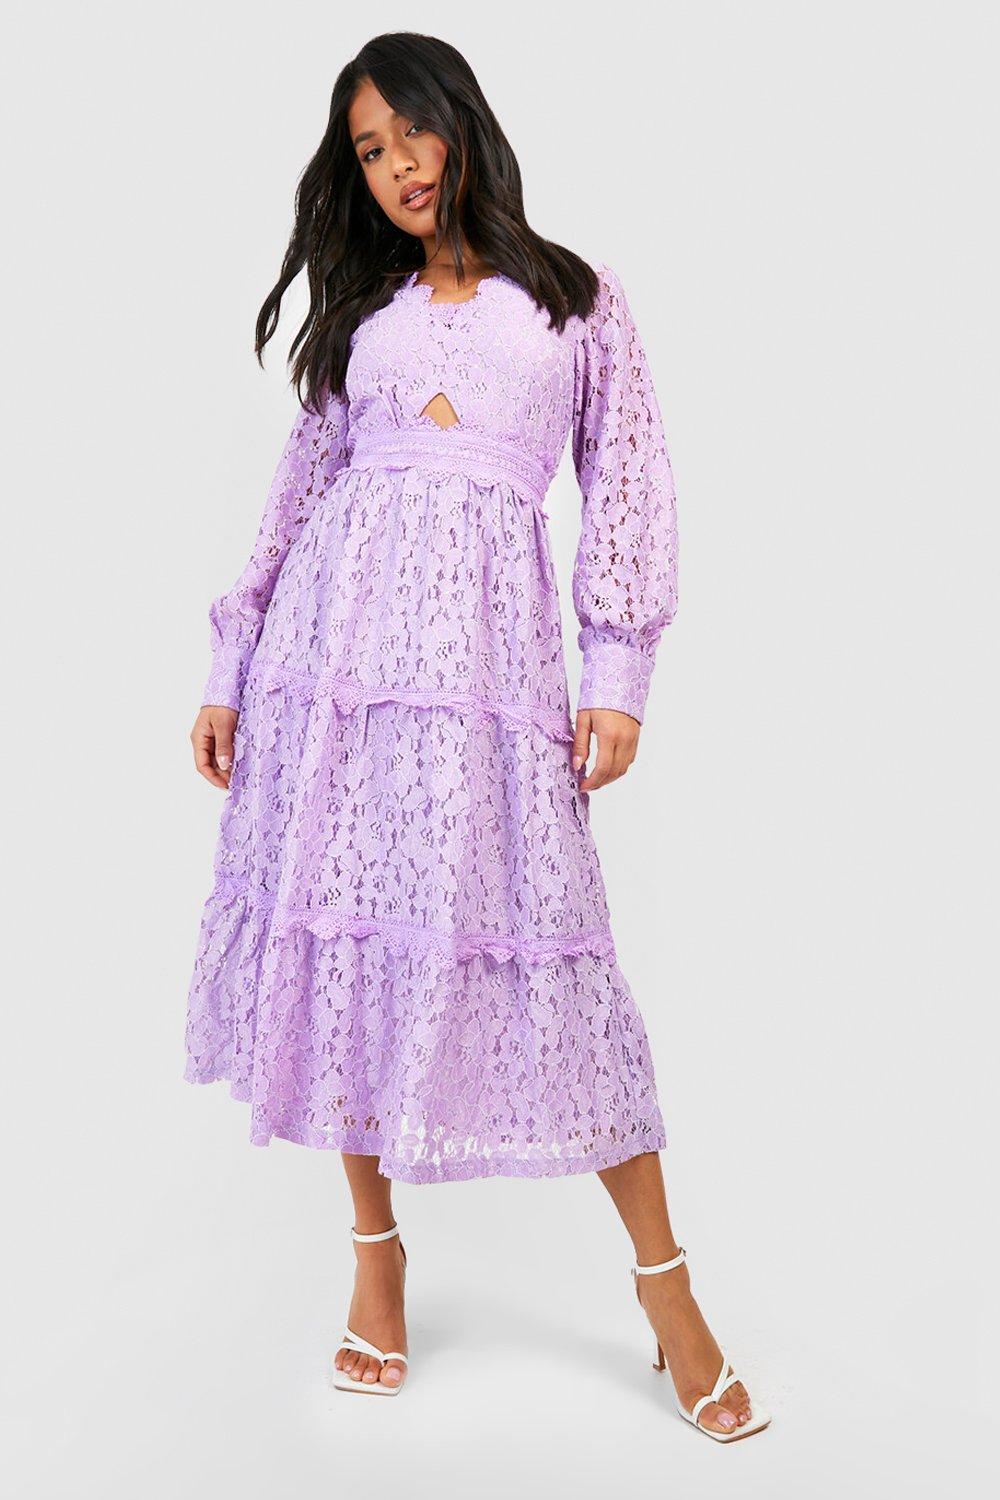 Petite Premium Lace Cut Out Midaxi Dress